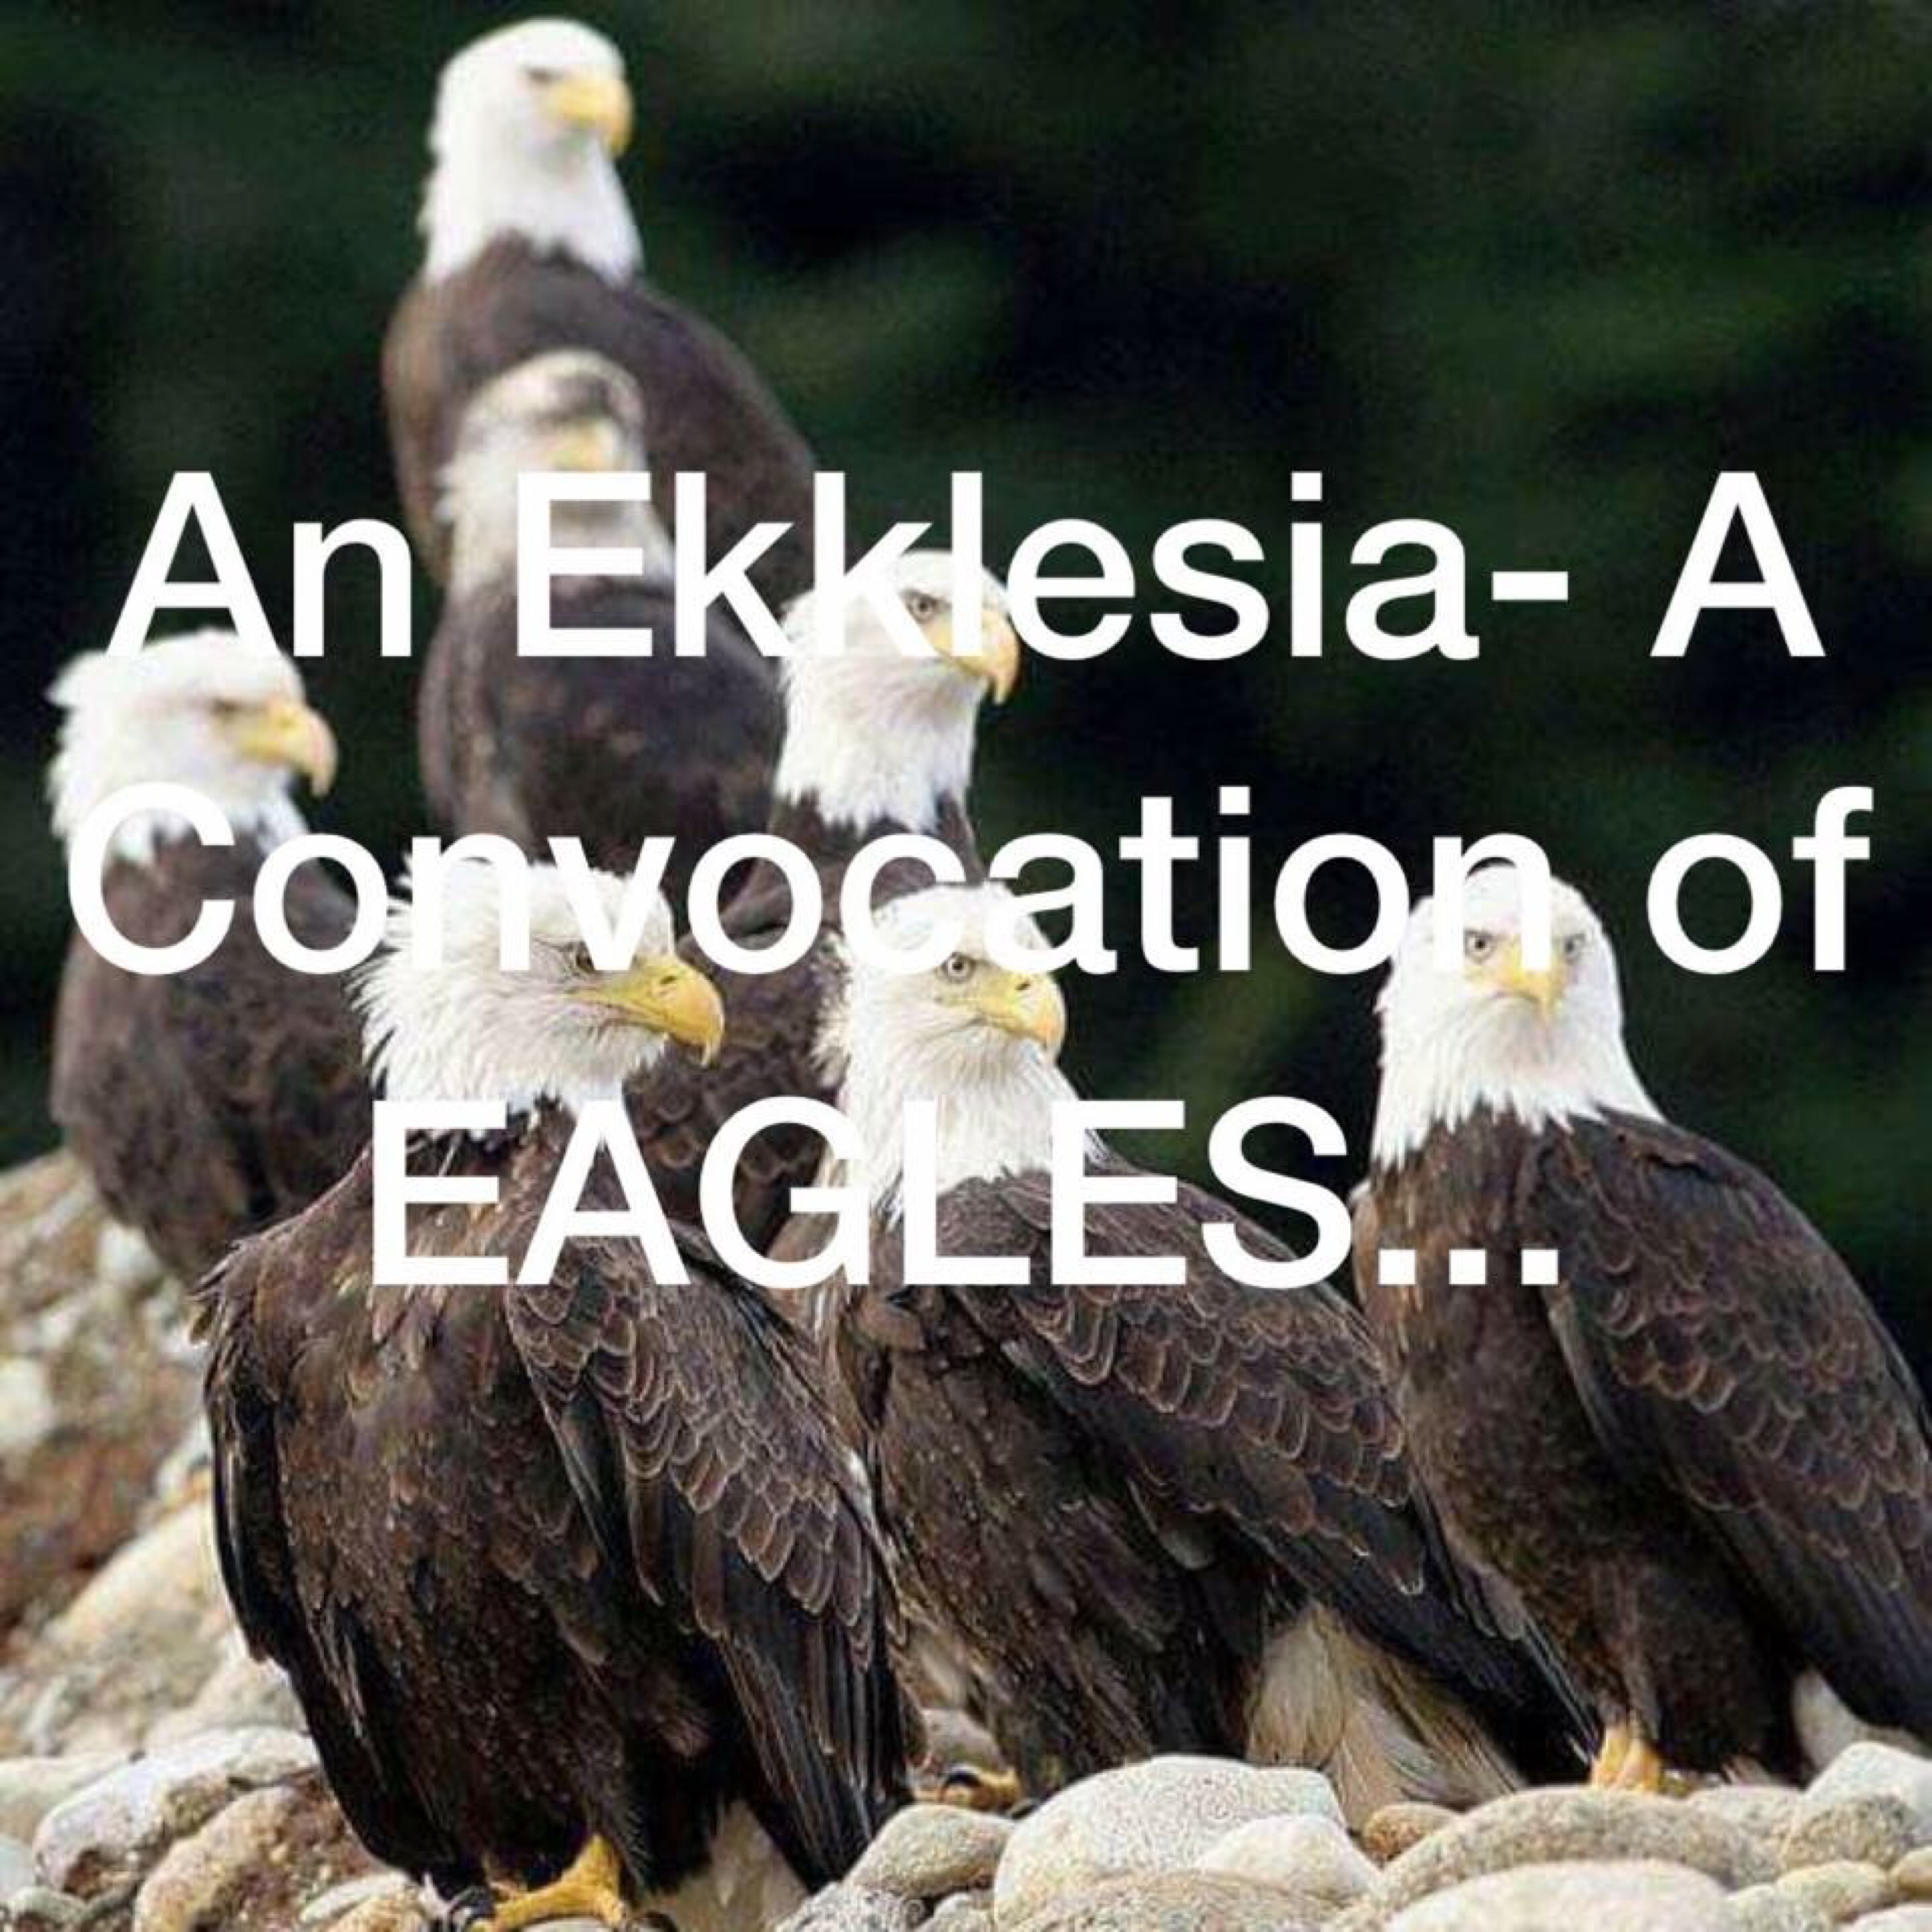 James Becton Ministries/ EaglesVision EKKLESIA!